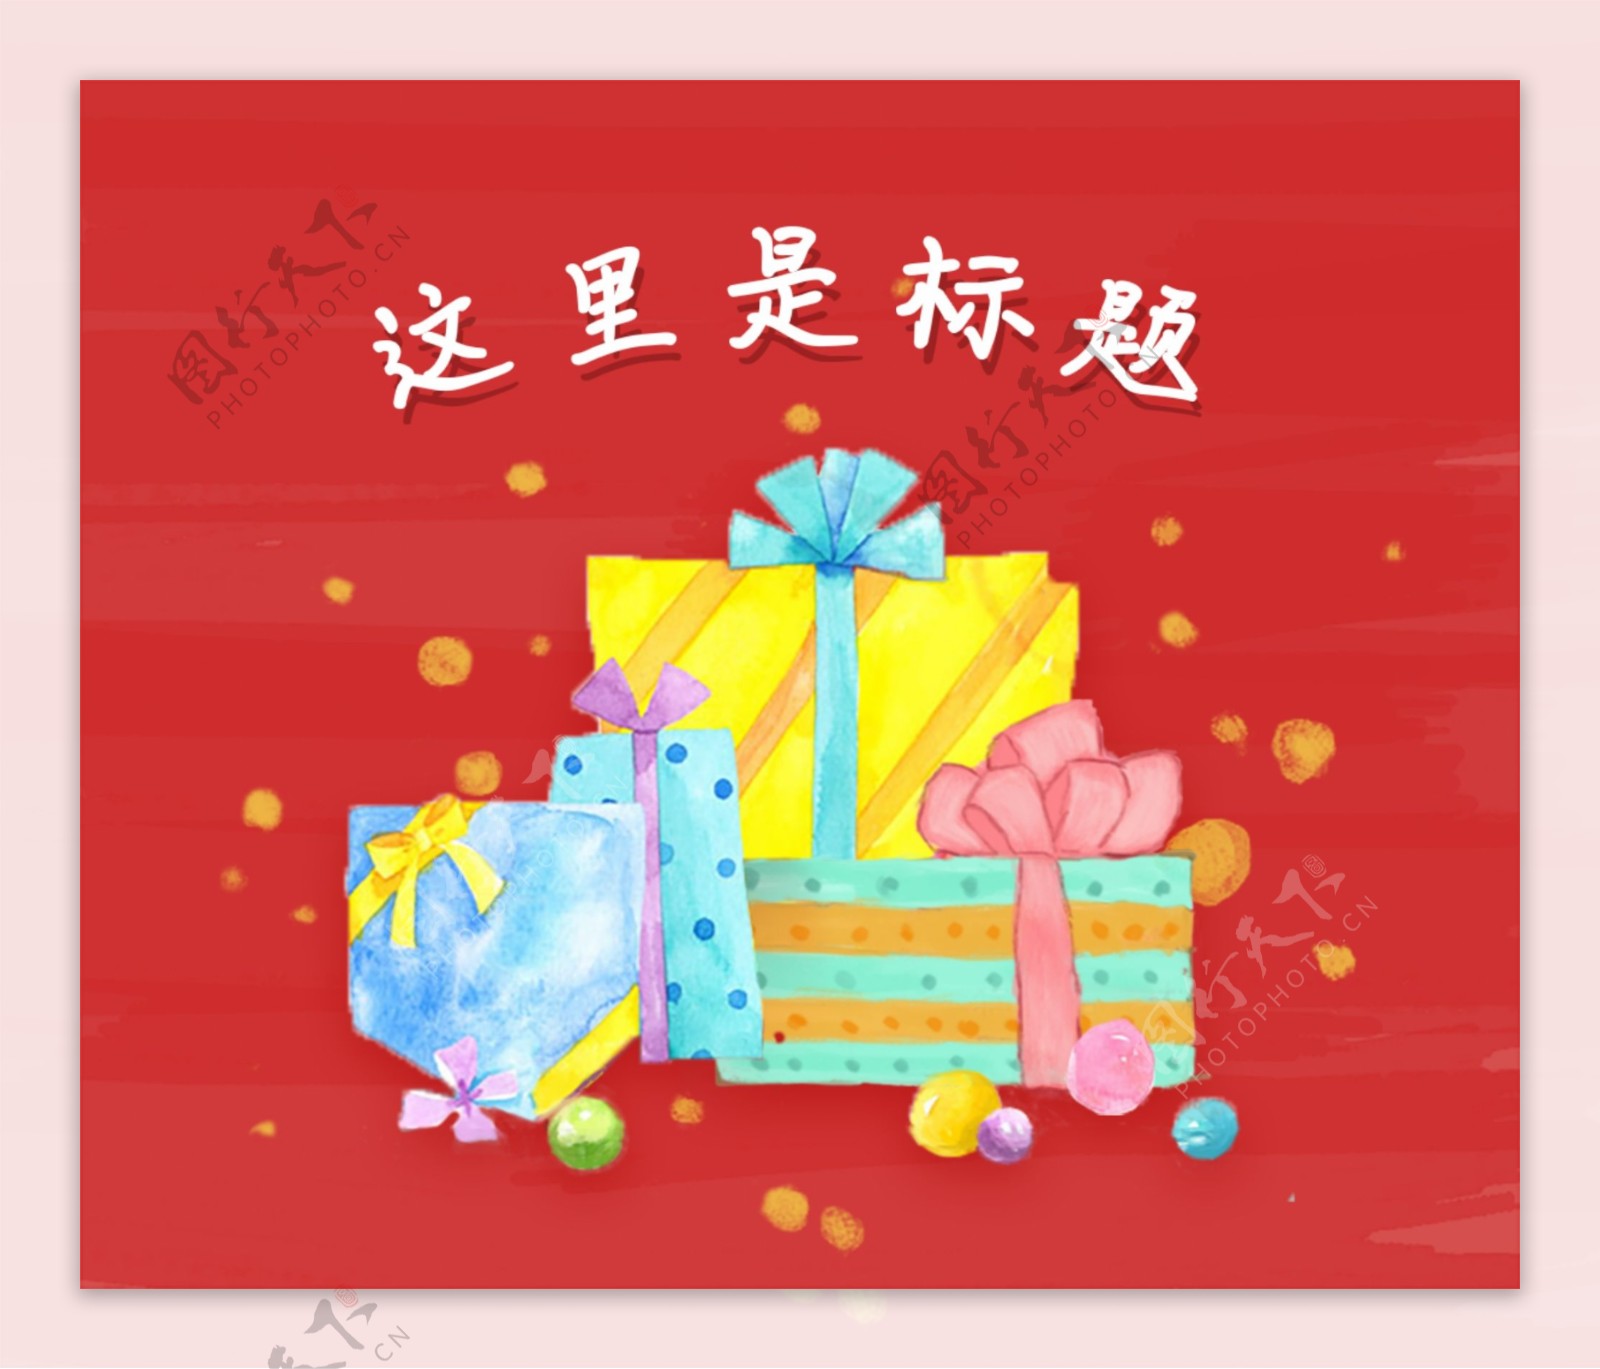 大红喜气各种手绘礼物盒banner广告图